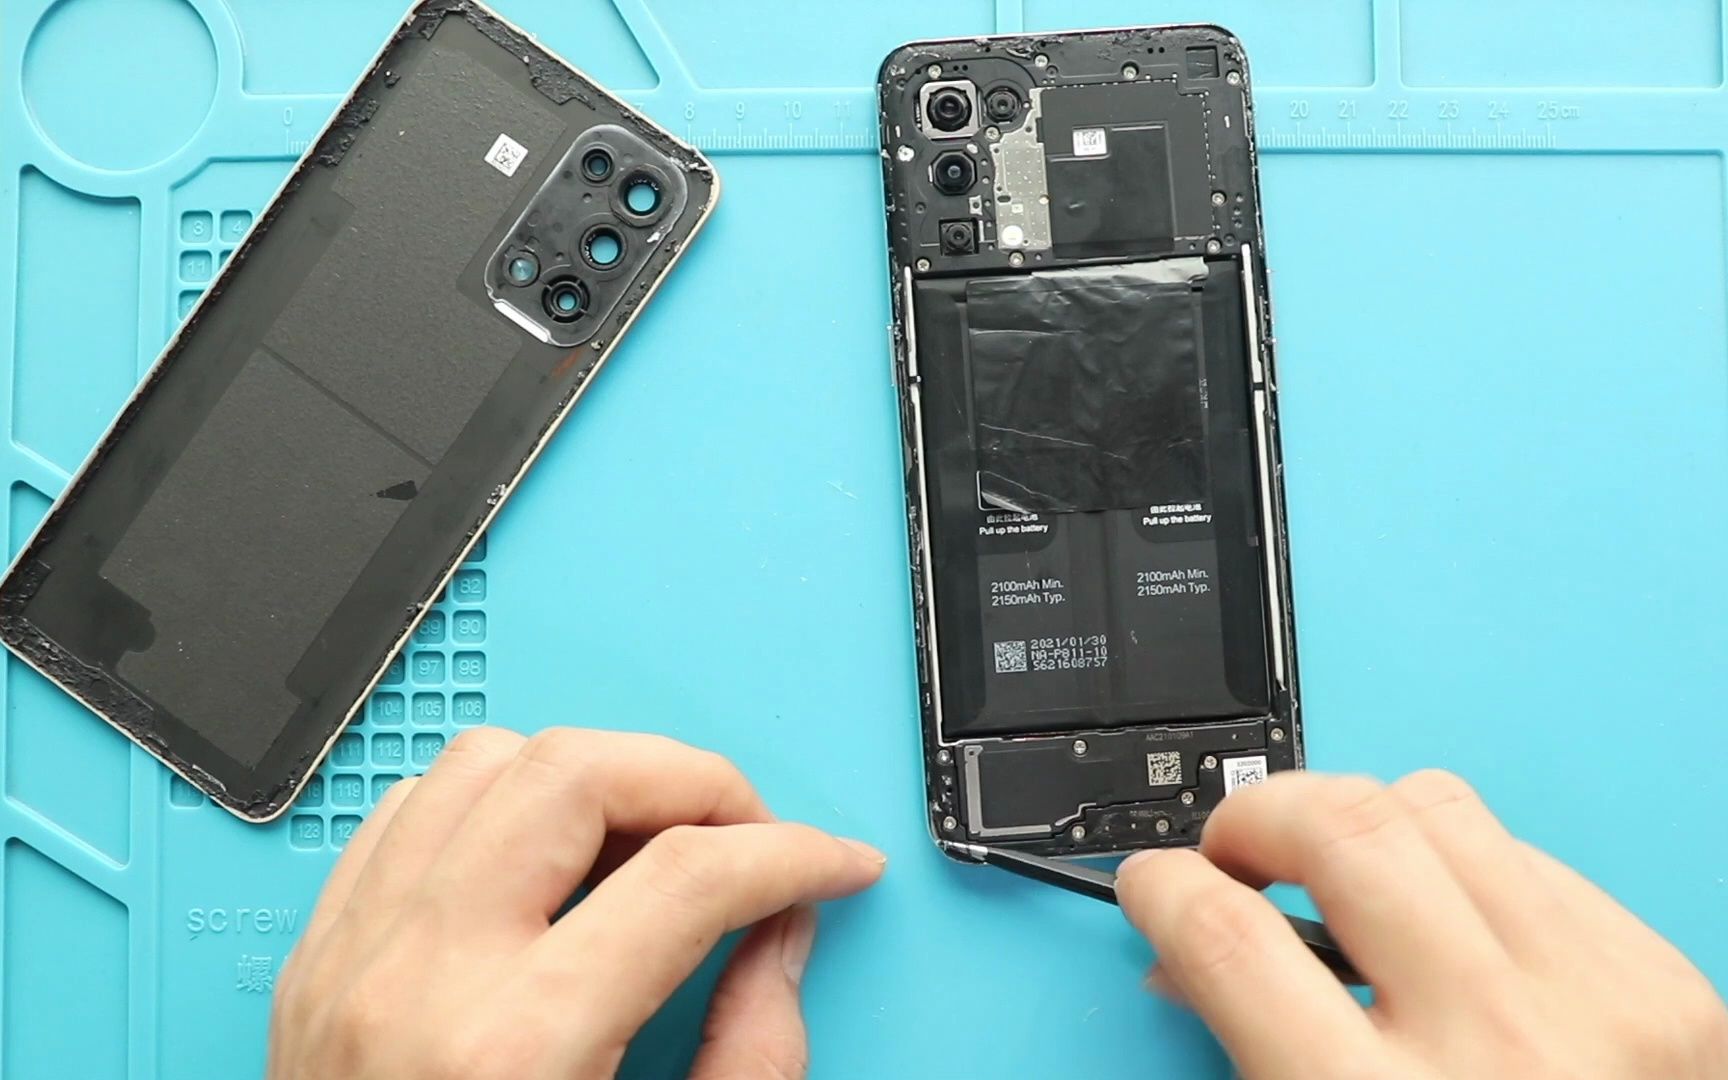 手机维修工程师分享修复 5G 芯片的实践经验与心得  第4张